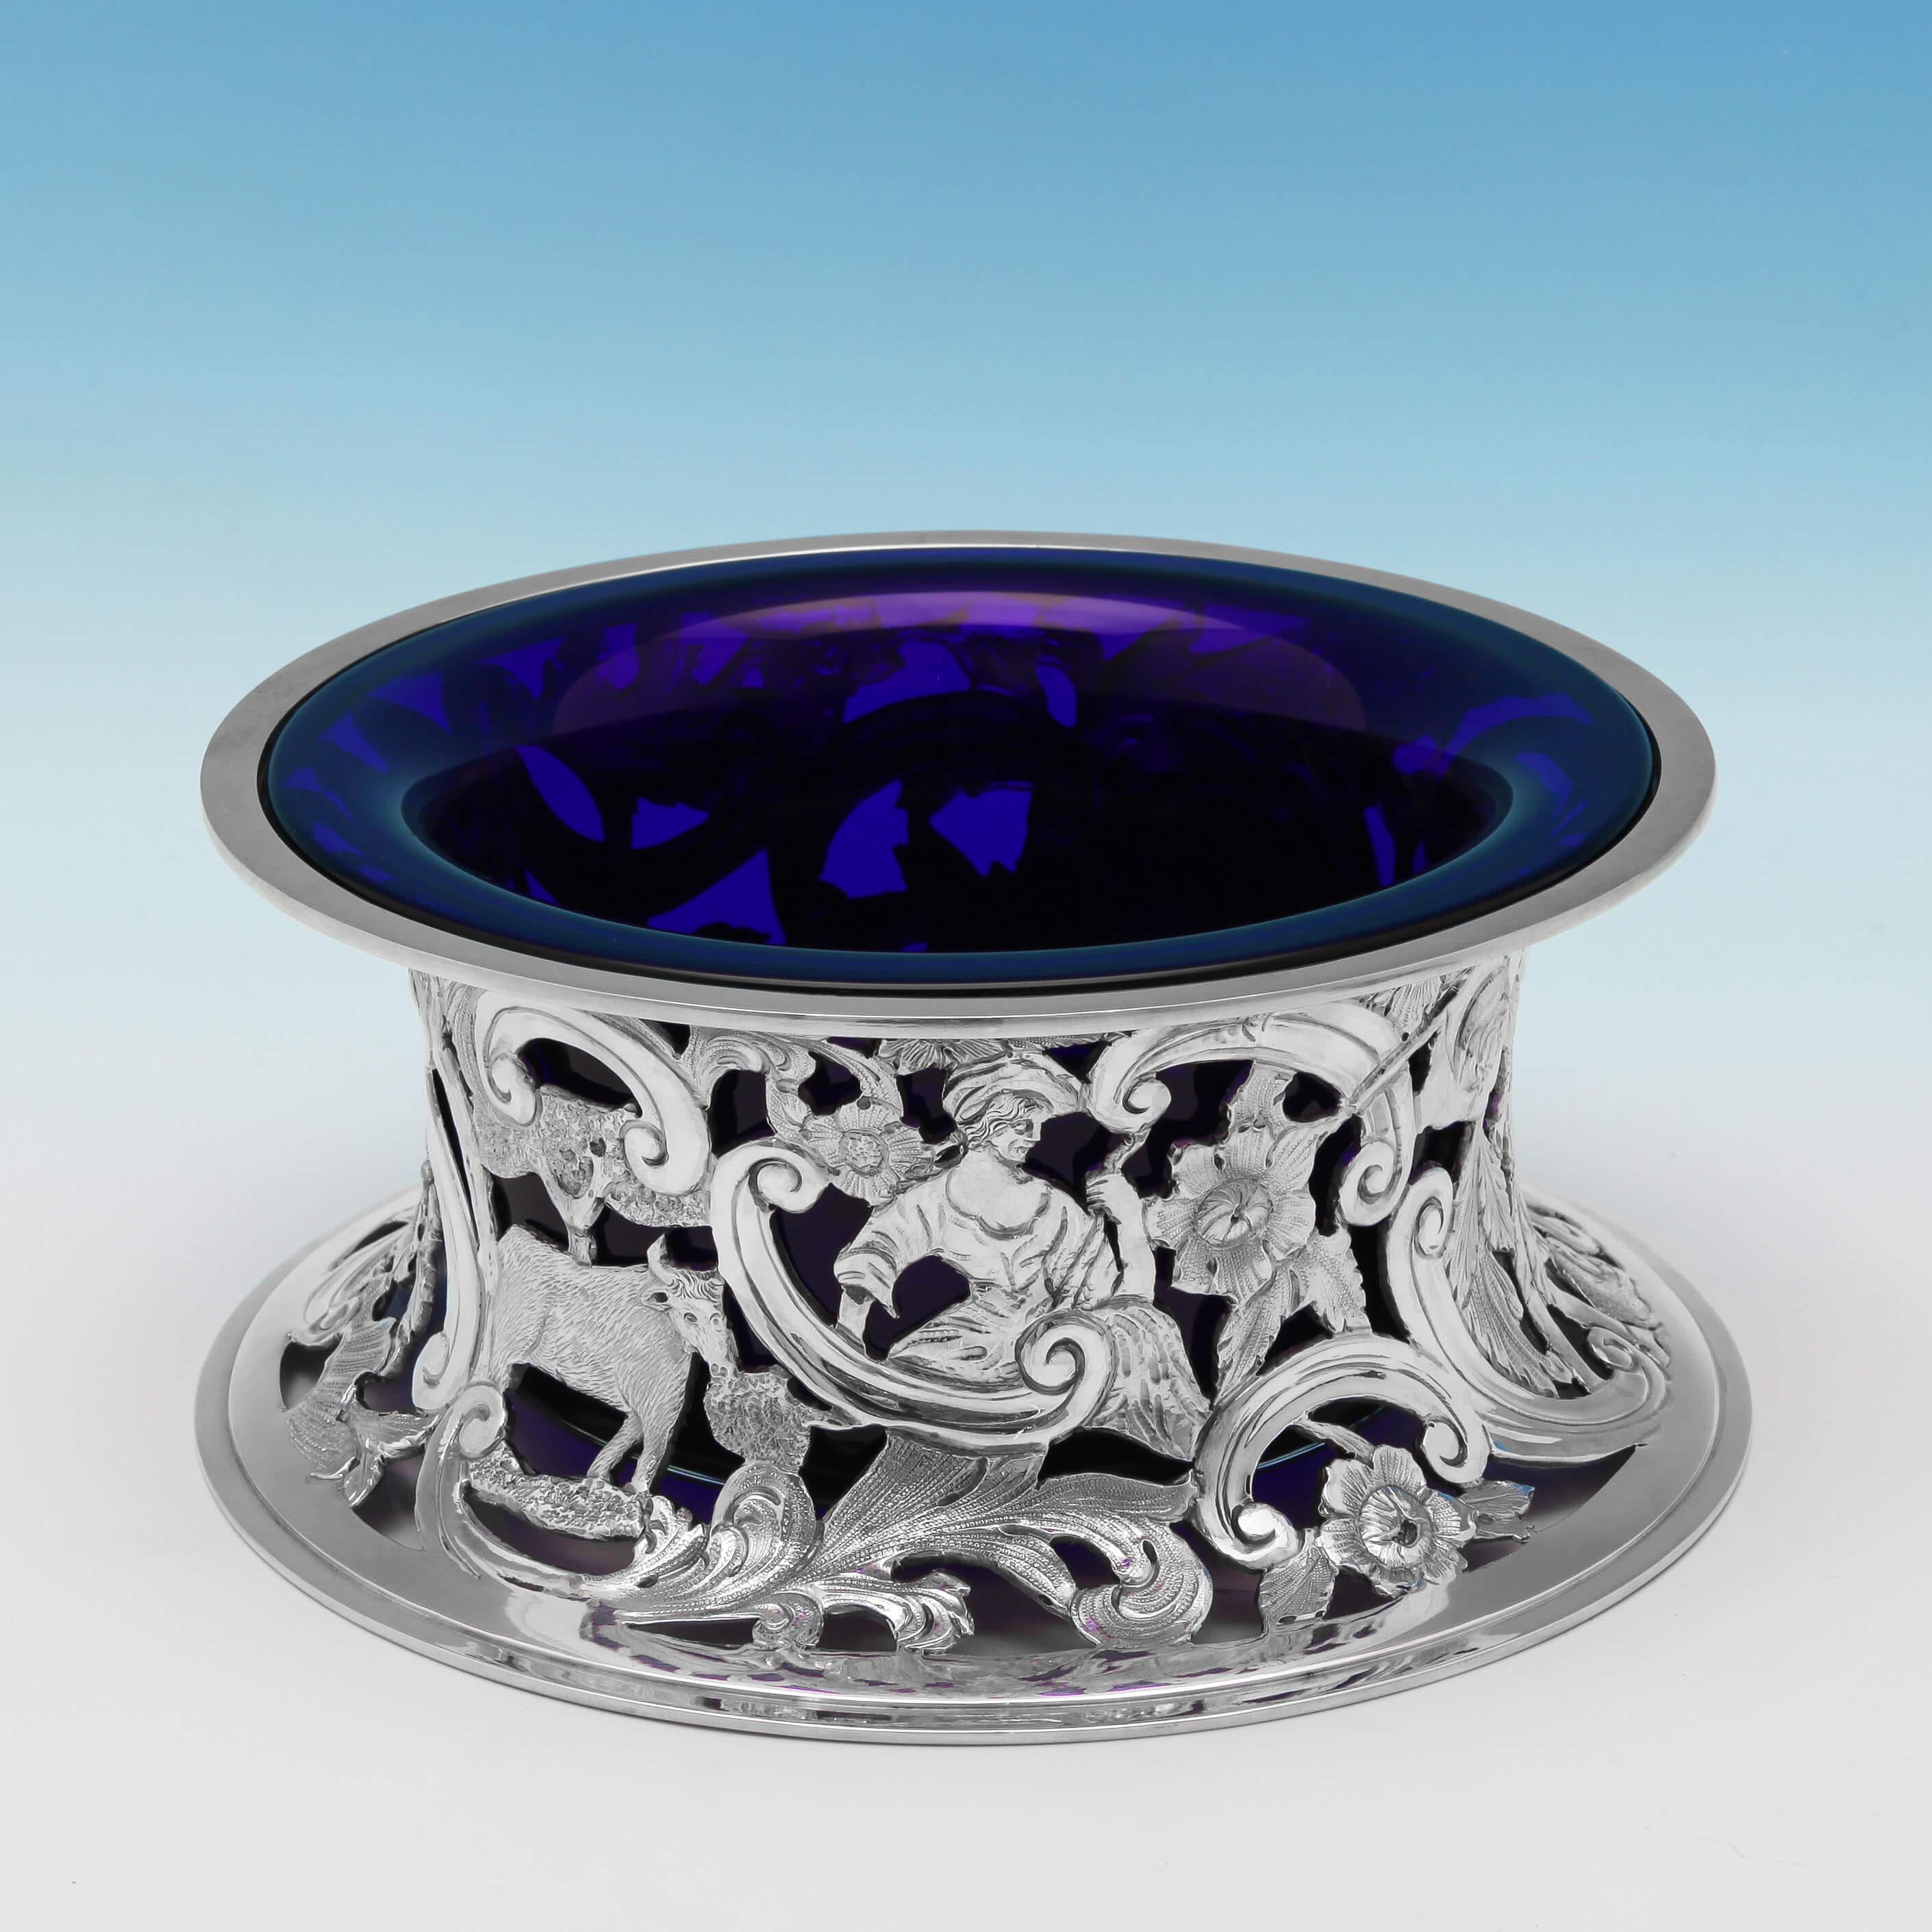 Poinçonné à Londres en 1921 par D. & J. Wellby, cet agréable anneau de plat en argent sterling présente un décor percé représentant des bergers et des animaux de la campagne ainsi qu'un décor de volutes et de fleurs, et un revêtement en verre bleu.